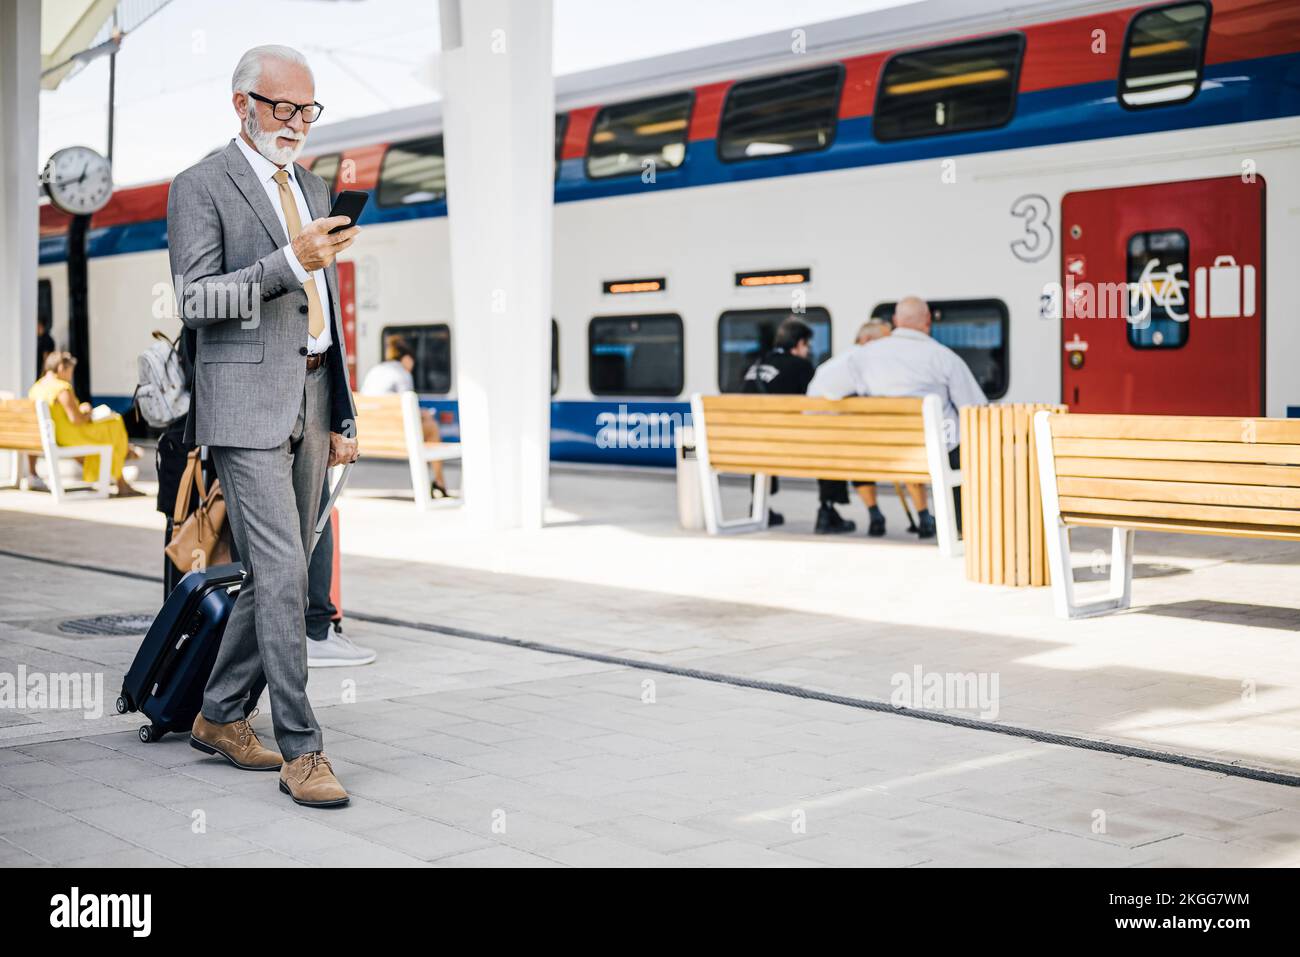 Messagerie professionnelle senior sur smartphone. Un homme d'affaires âgé marche avec une valise à la station de métro ou de train. Banque D'Images